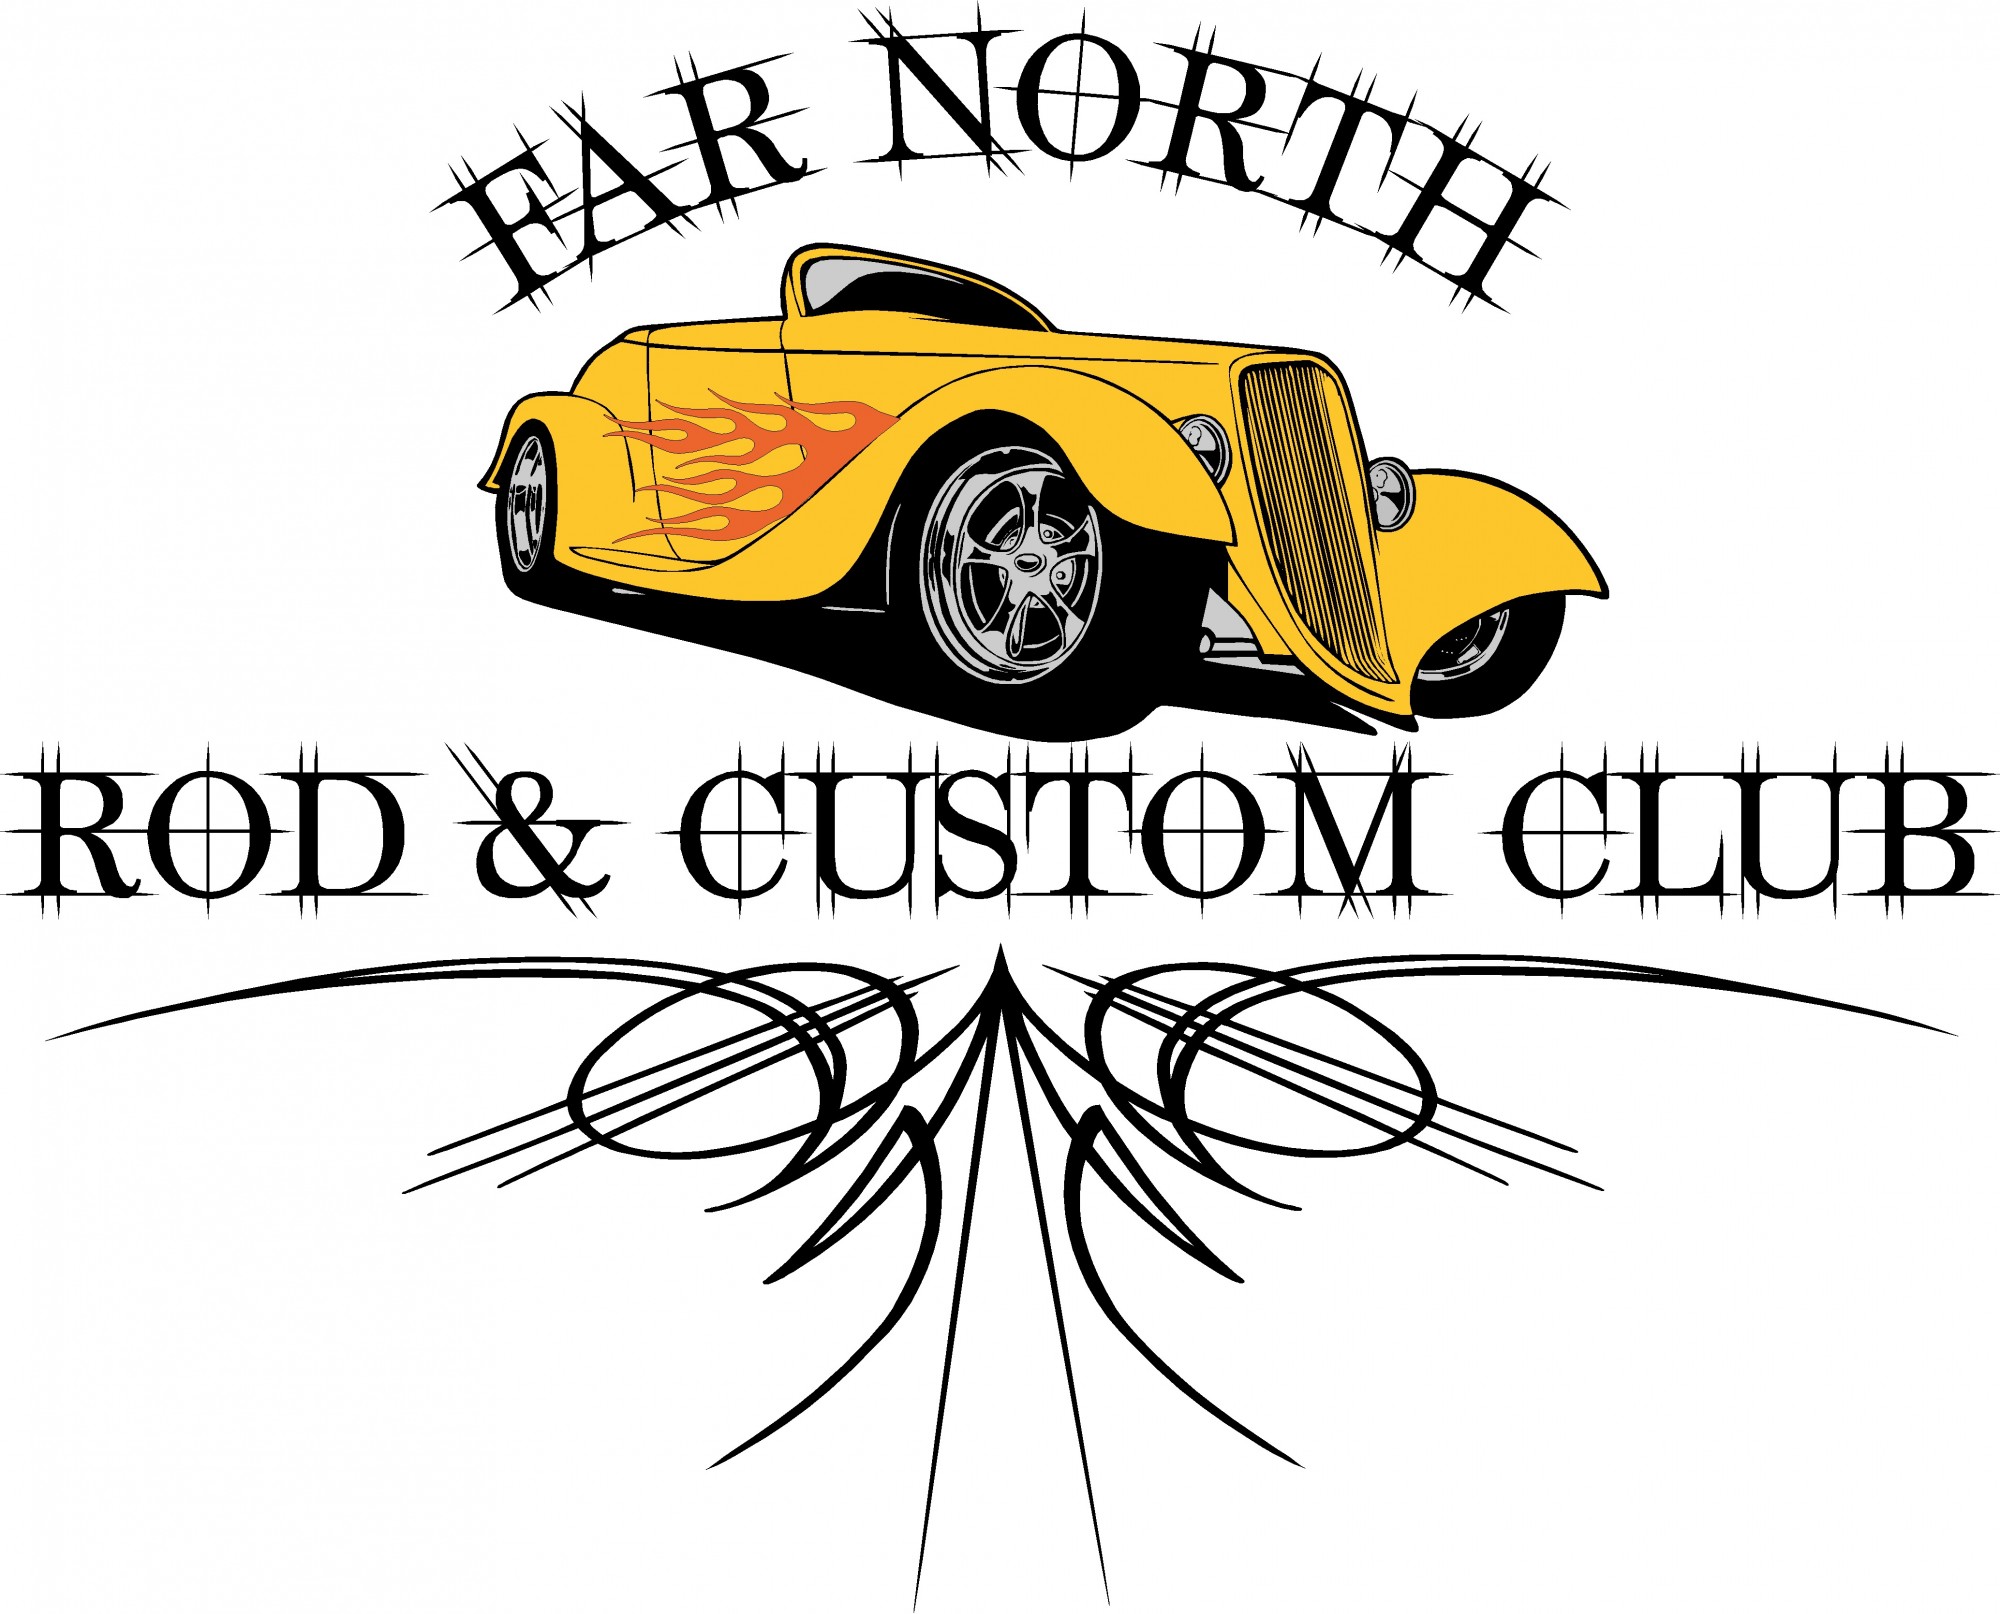 Far North Rod & Custom Club - One Day Display